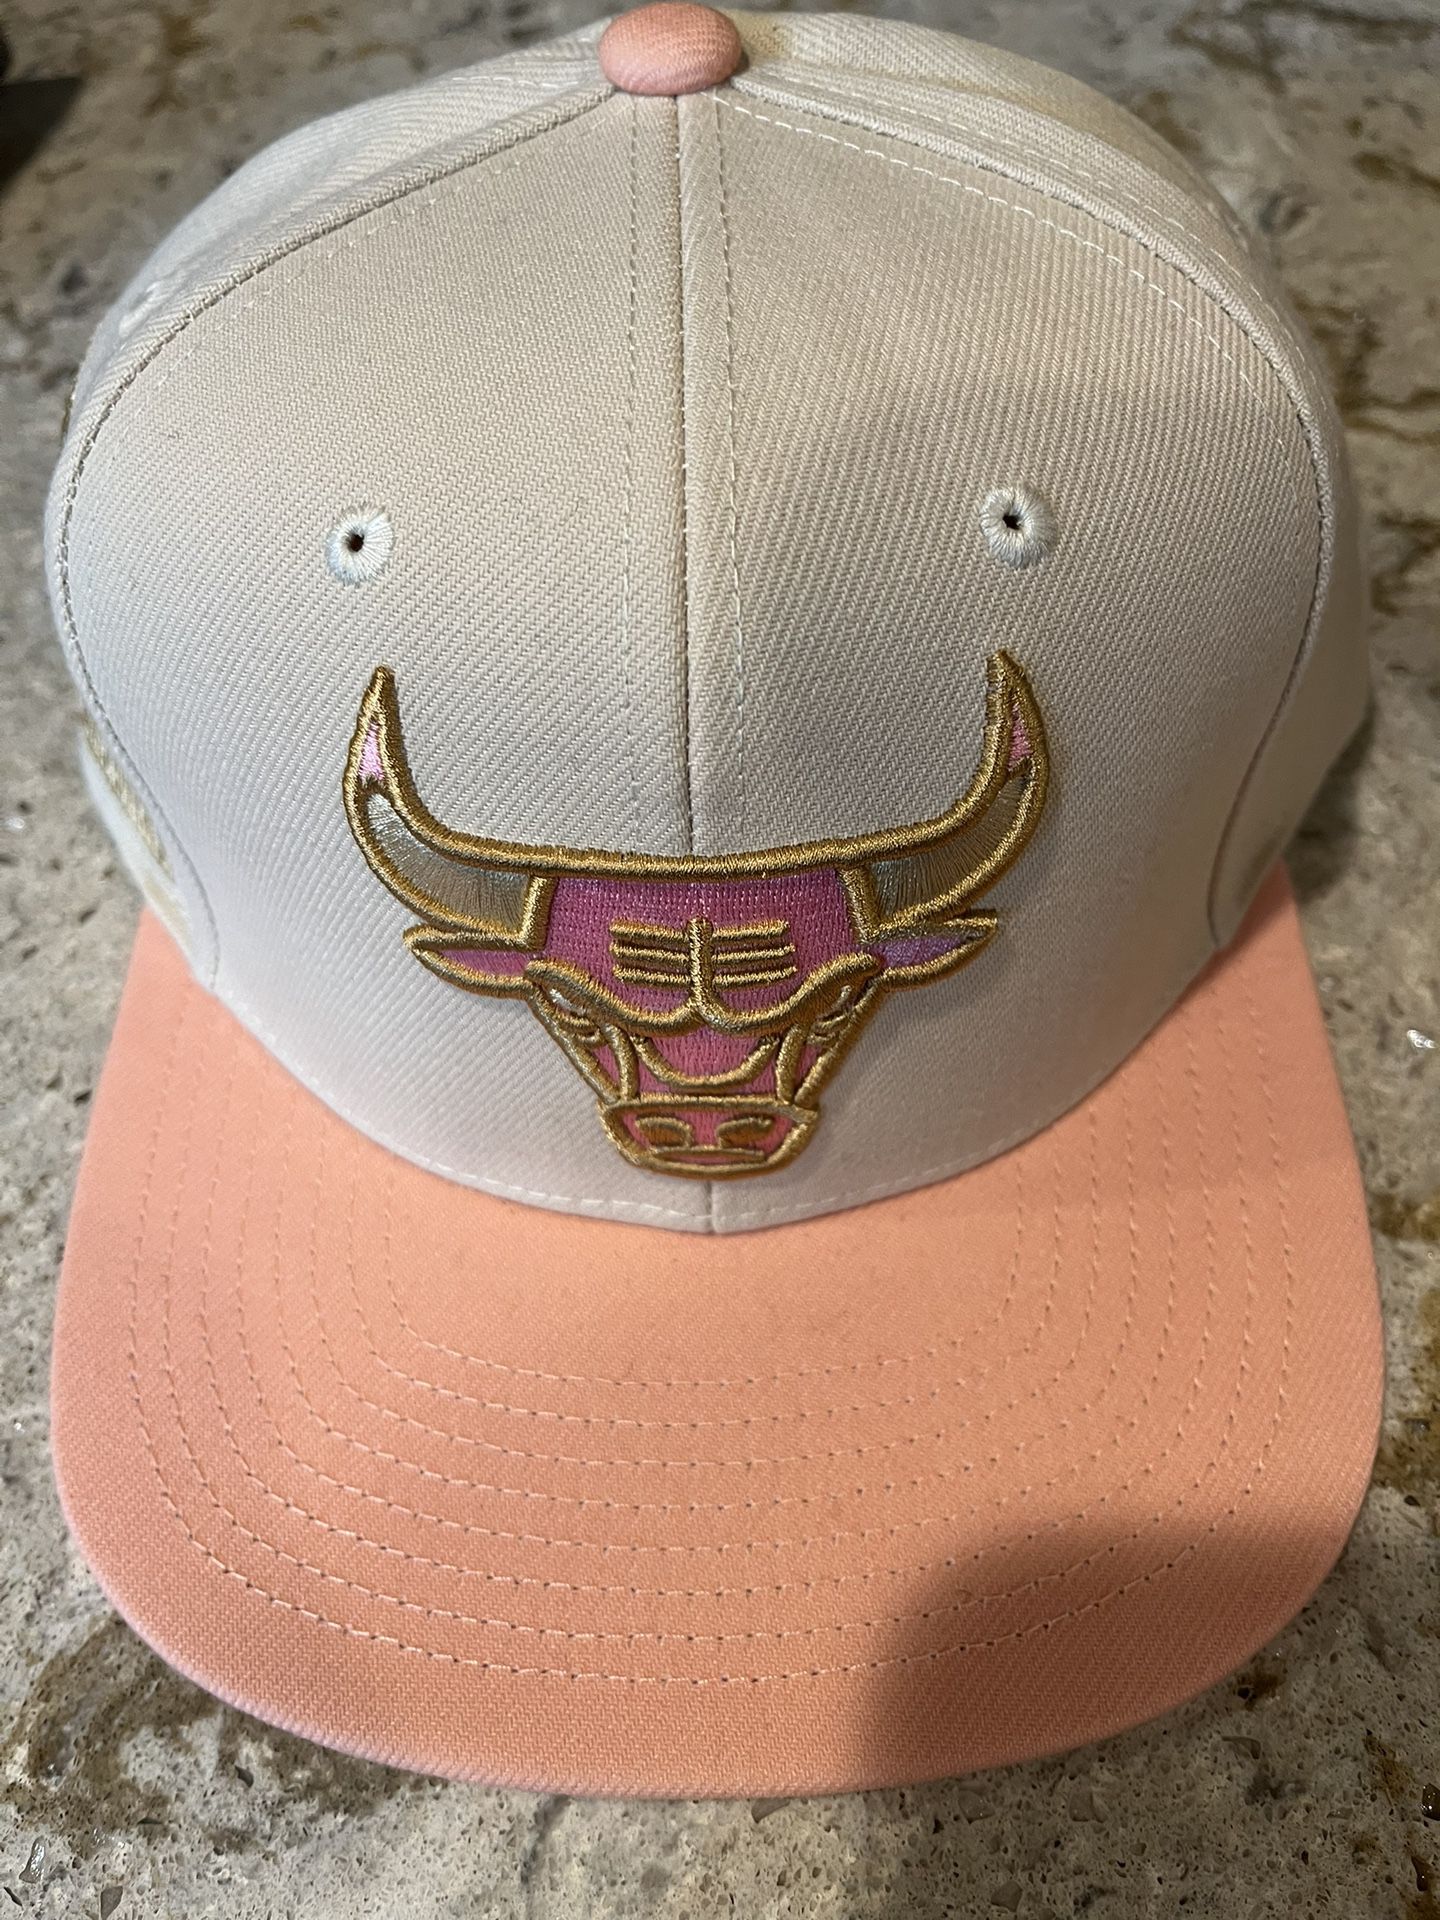 Mitchell & Ness Chicago Bulls Snapback Hat - 30th Anniversary - Brand New